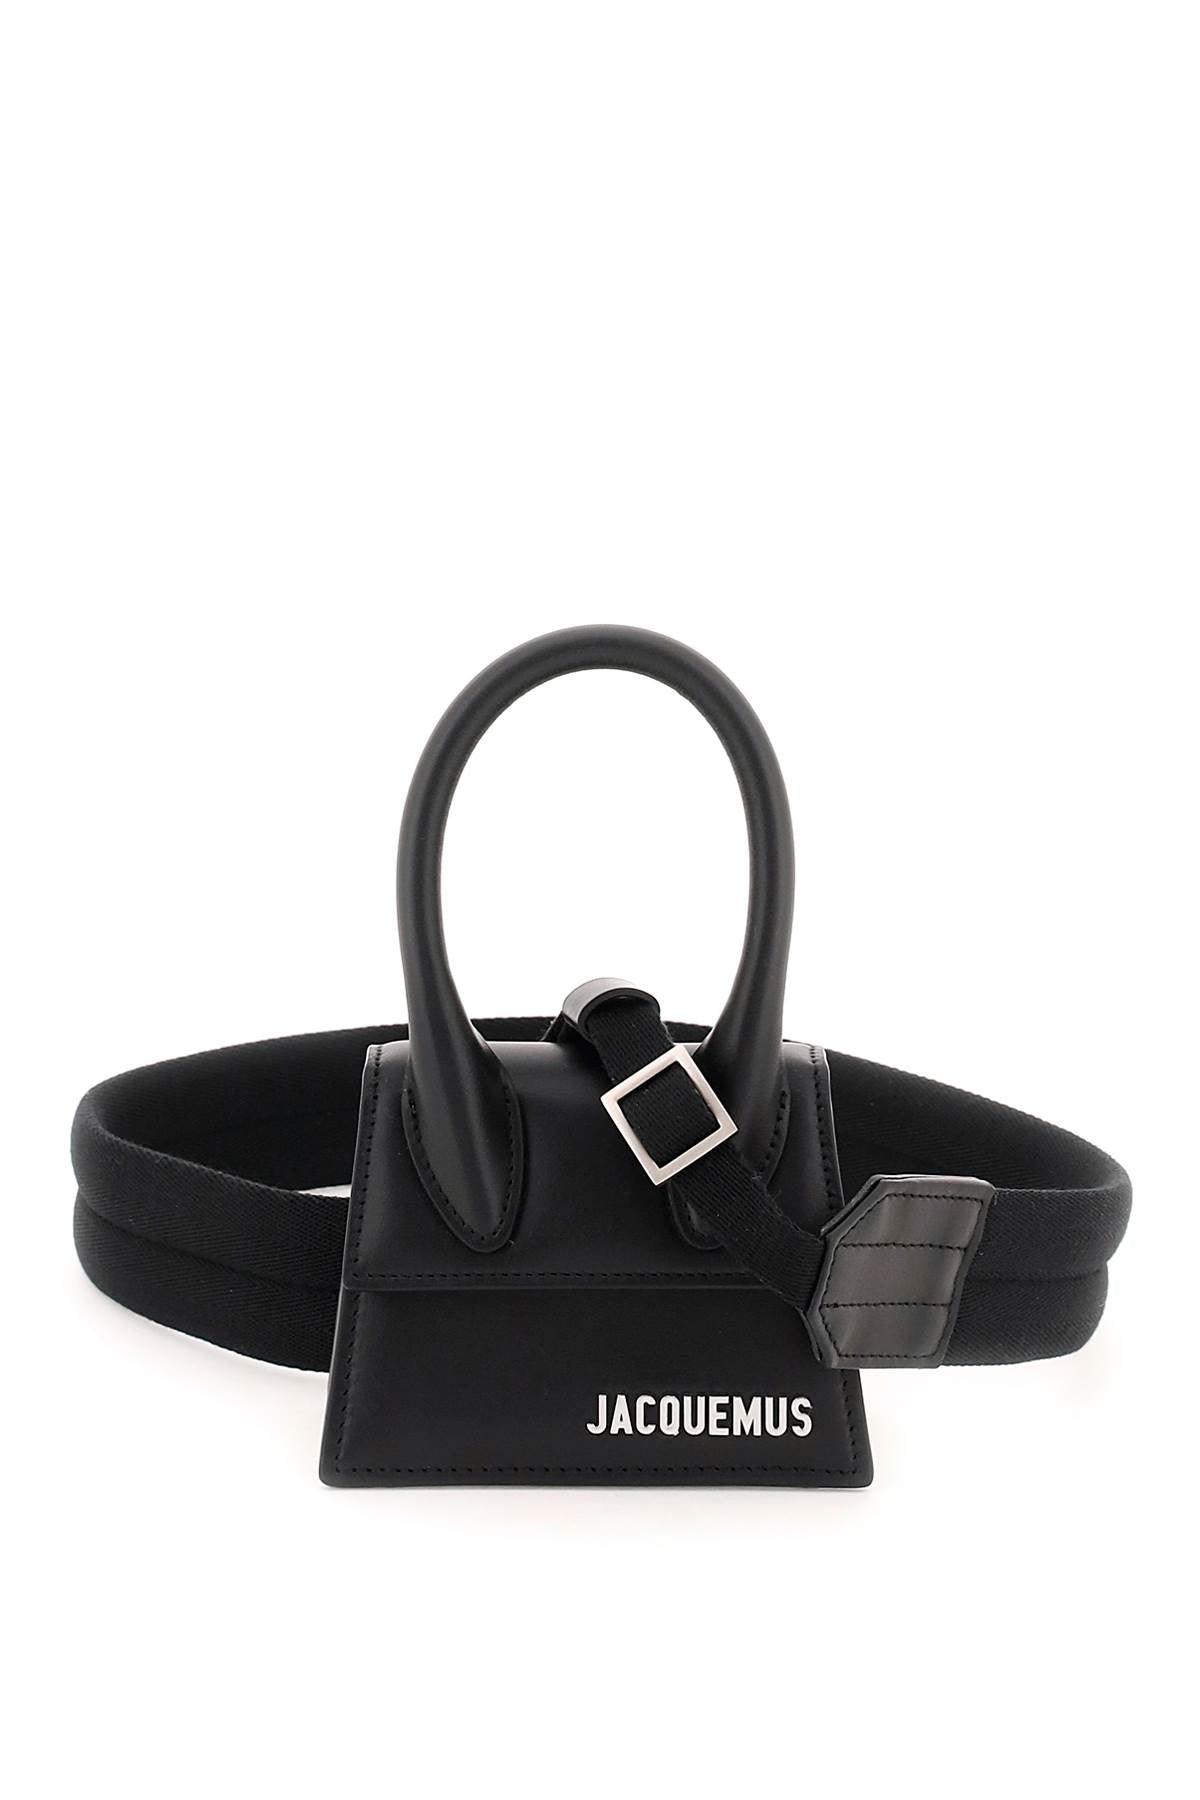 Jacquemus Le Chiquito Mini Bag - JOHN JULIA